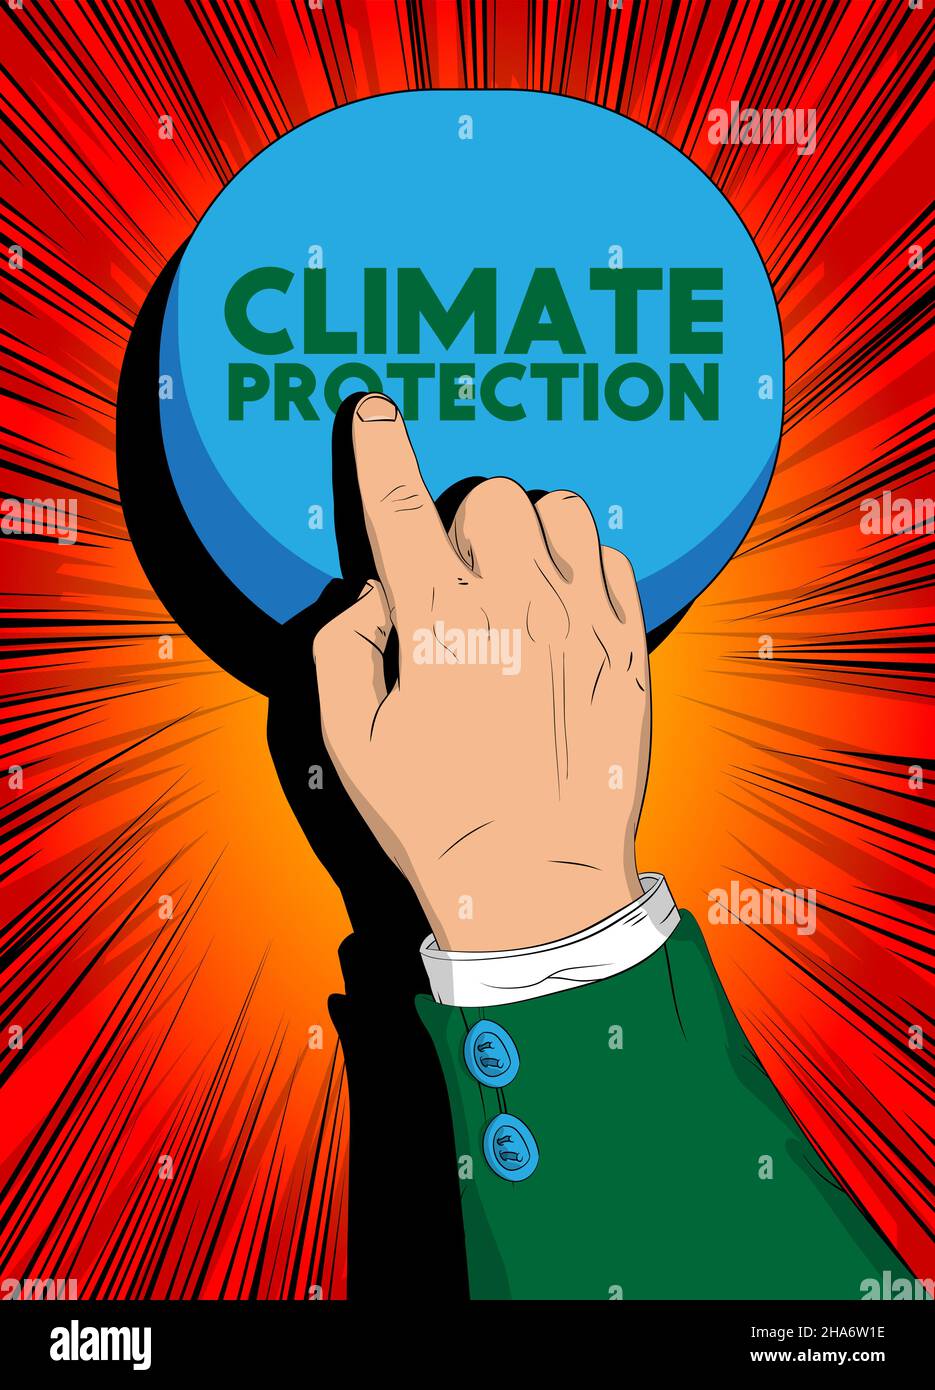 Geschäftsmann drückt mit seinem Zeigefinger die Klimaschutztaste. Konzept im Comic-Stil. Stock Vektor